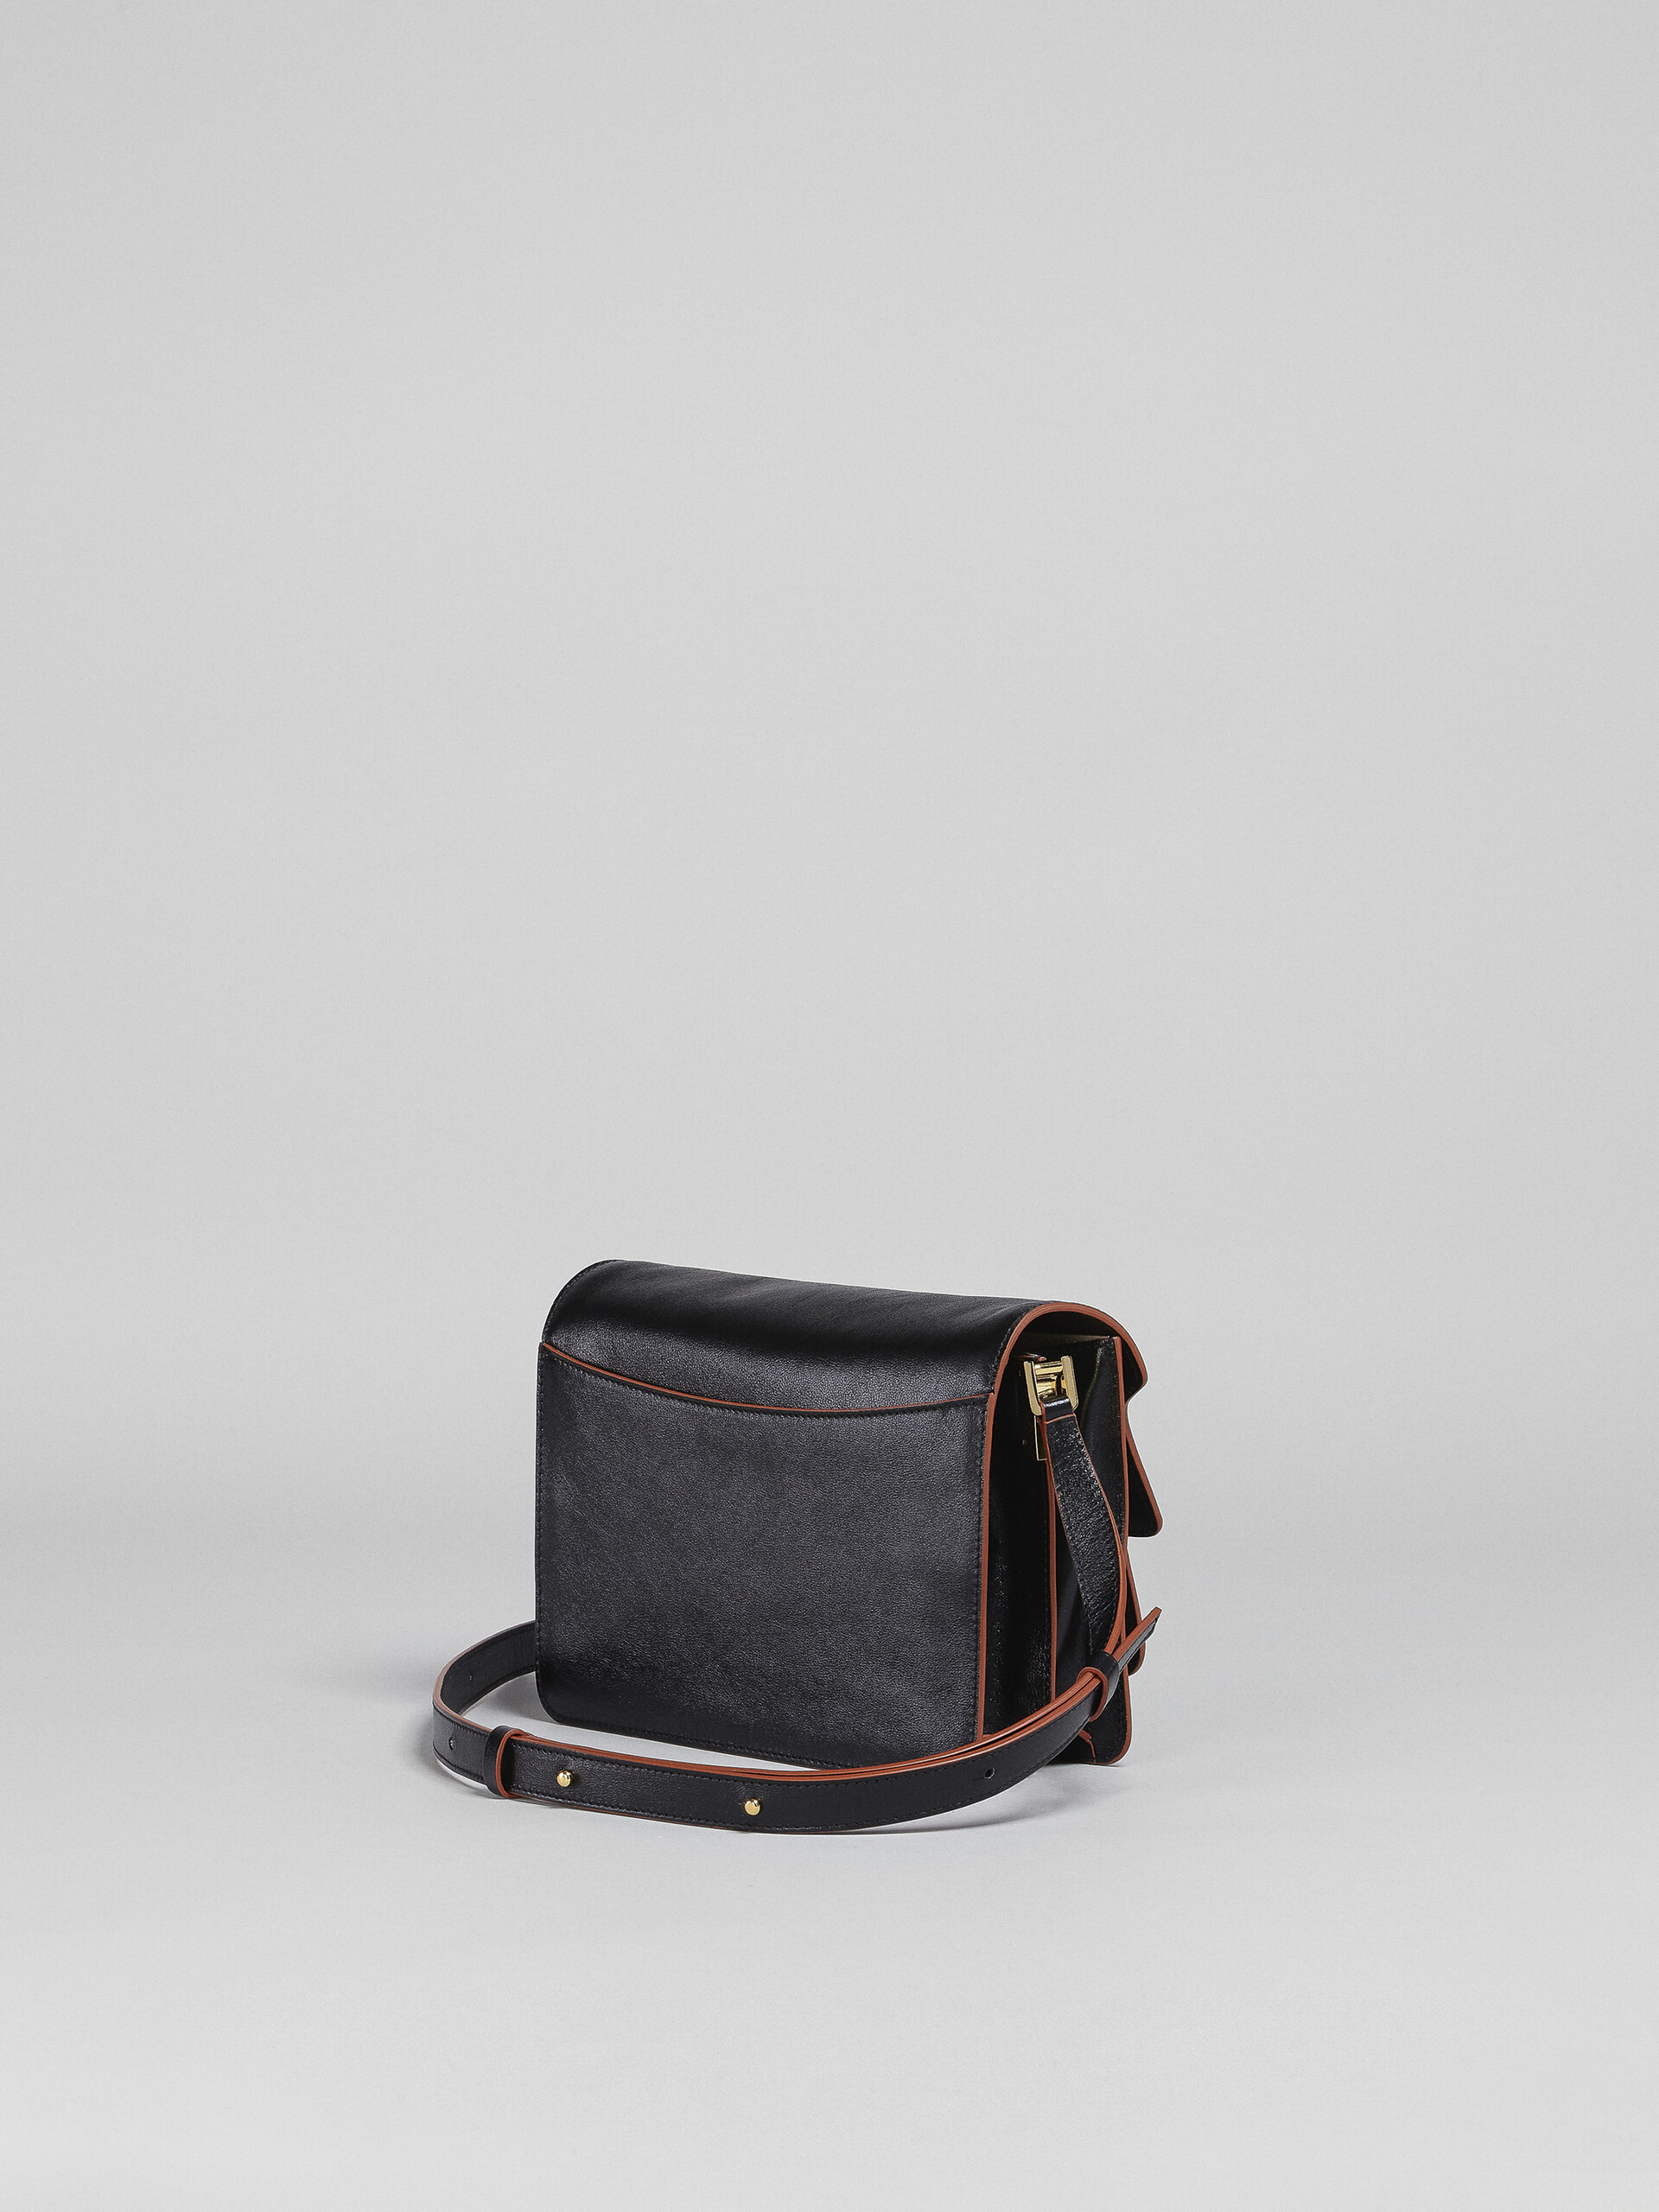 Black tumbled calf medium TRUNK SOFT bag - Shoulder Bag - Image 3